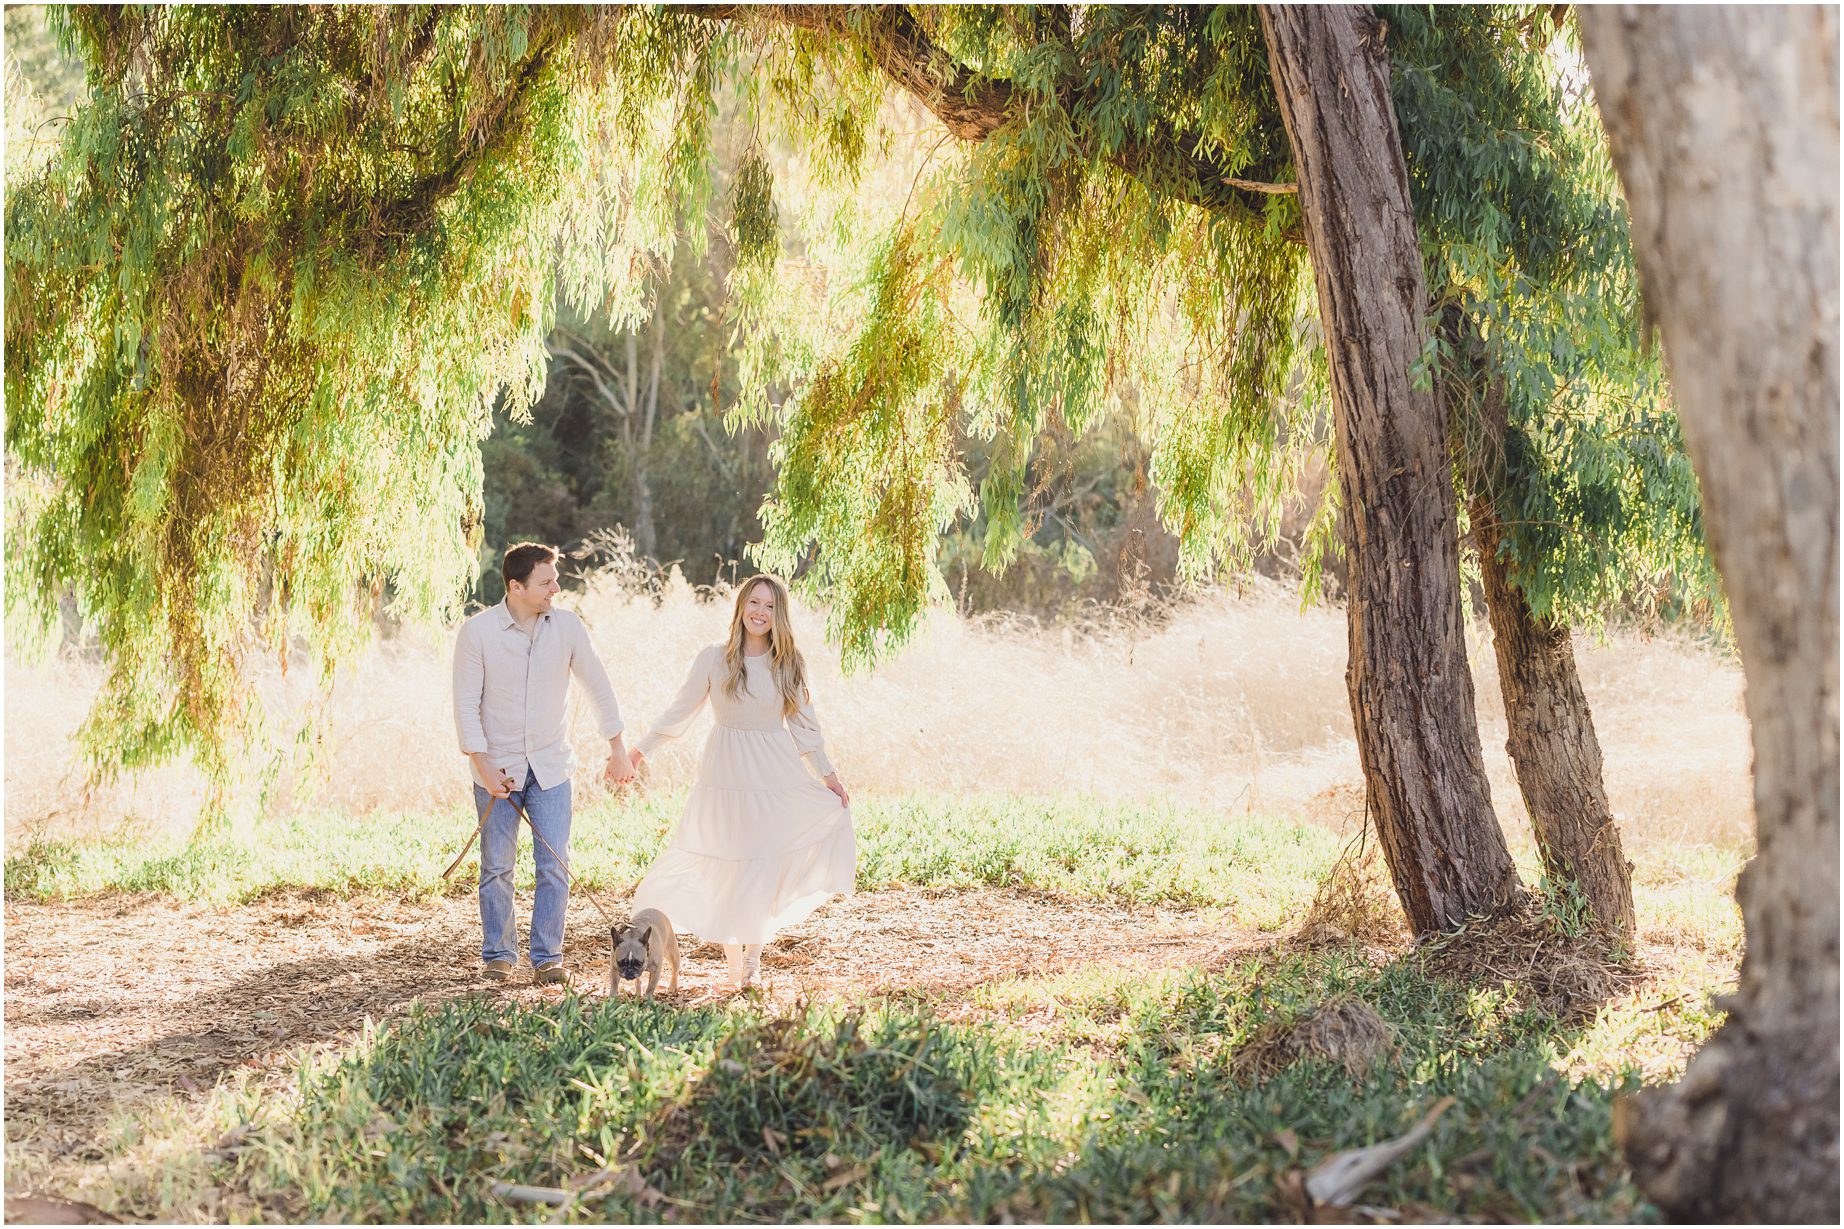 A couple walks near a tree in a field in Palos Verdes